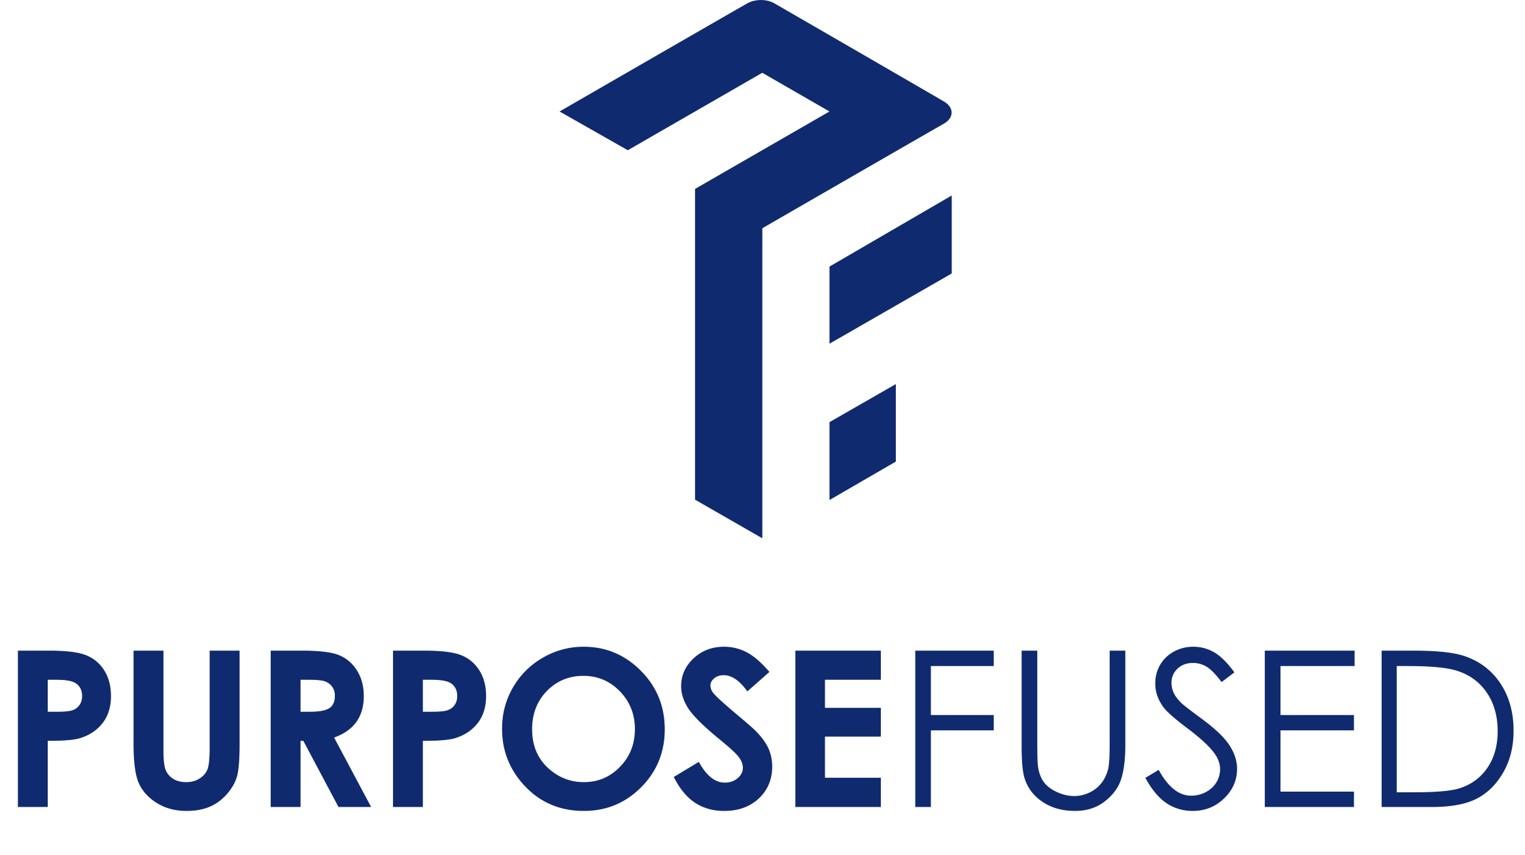 PurposeFused Ltd